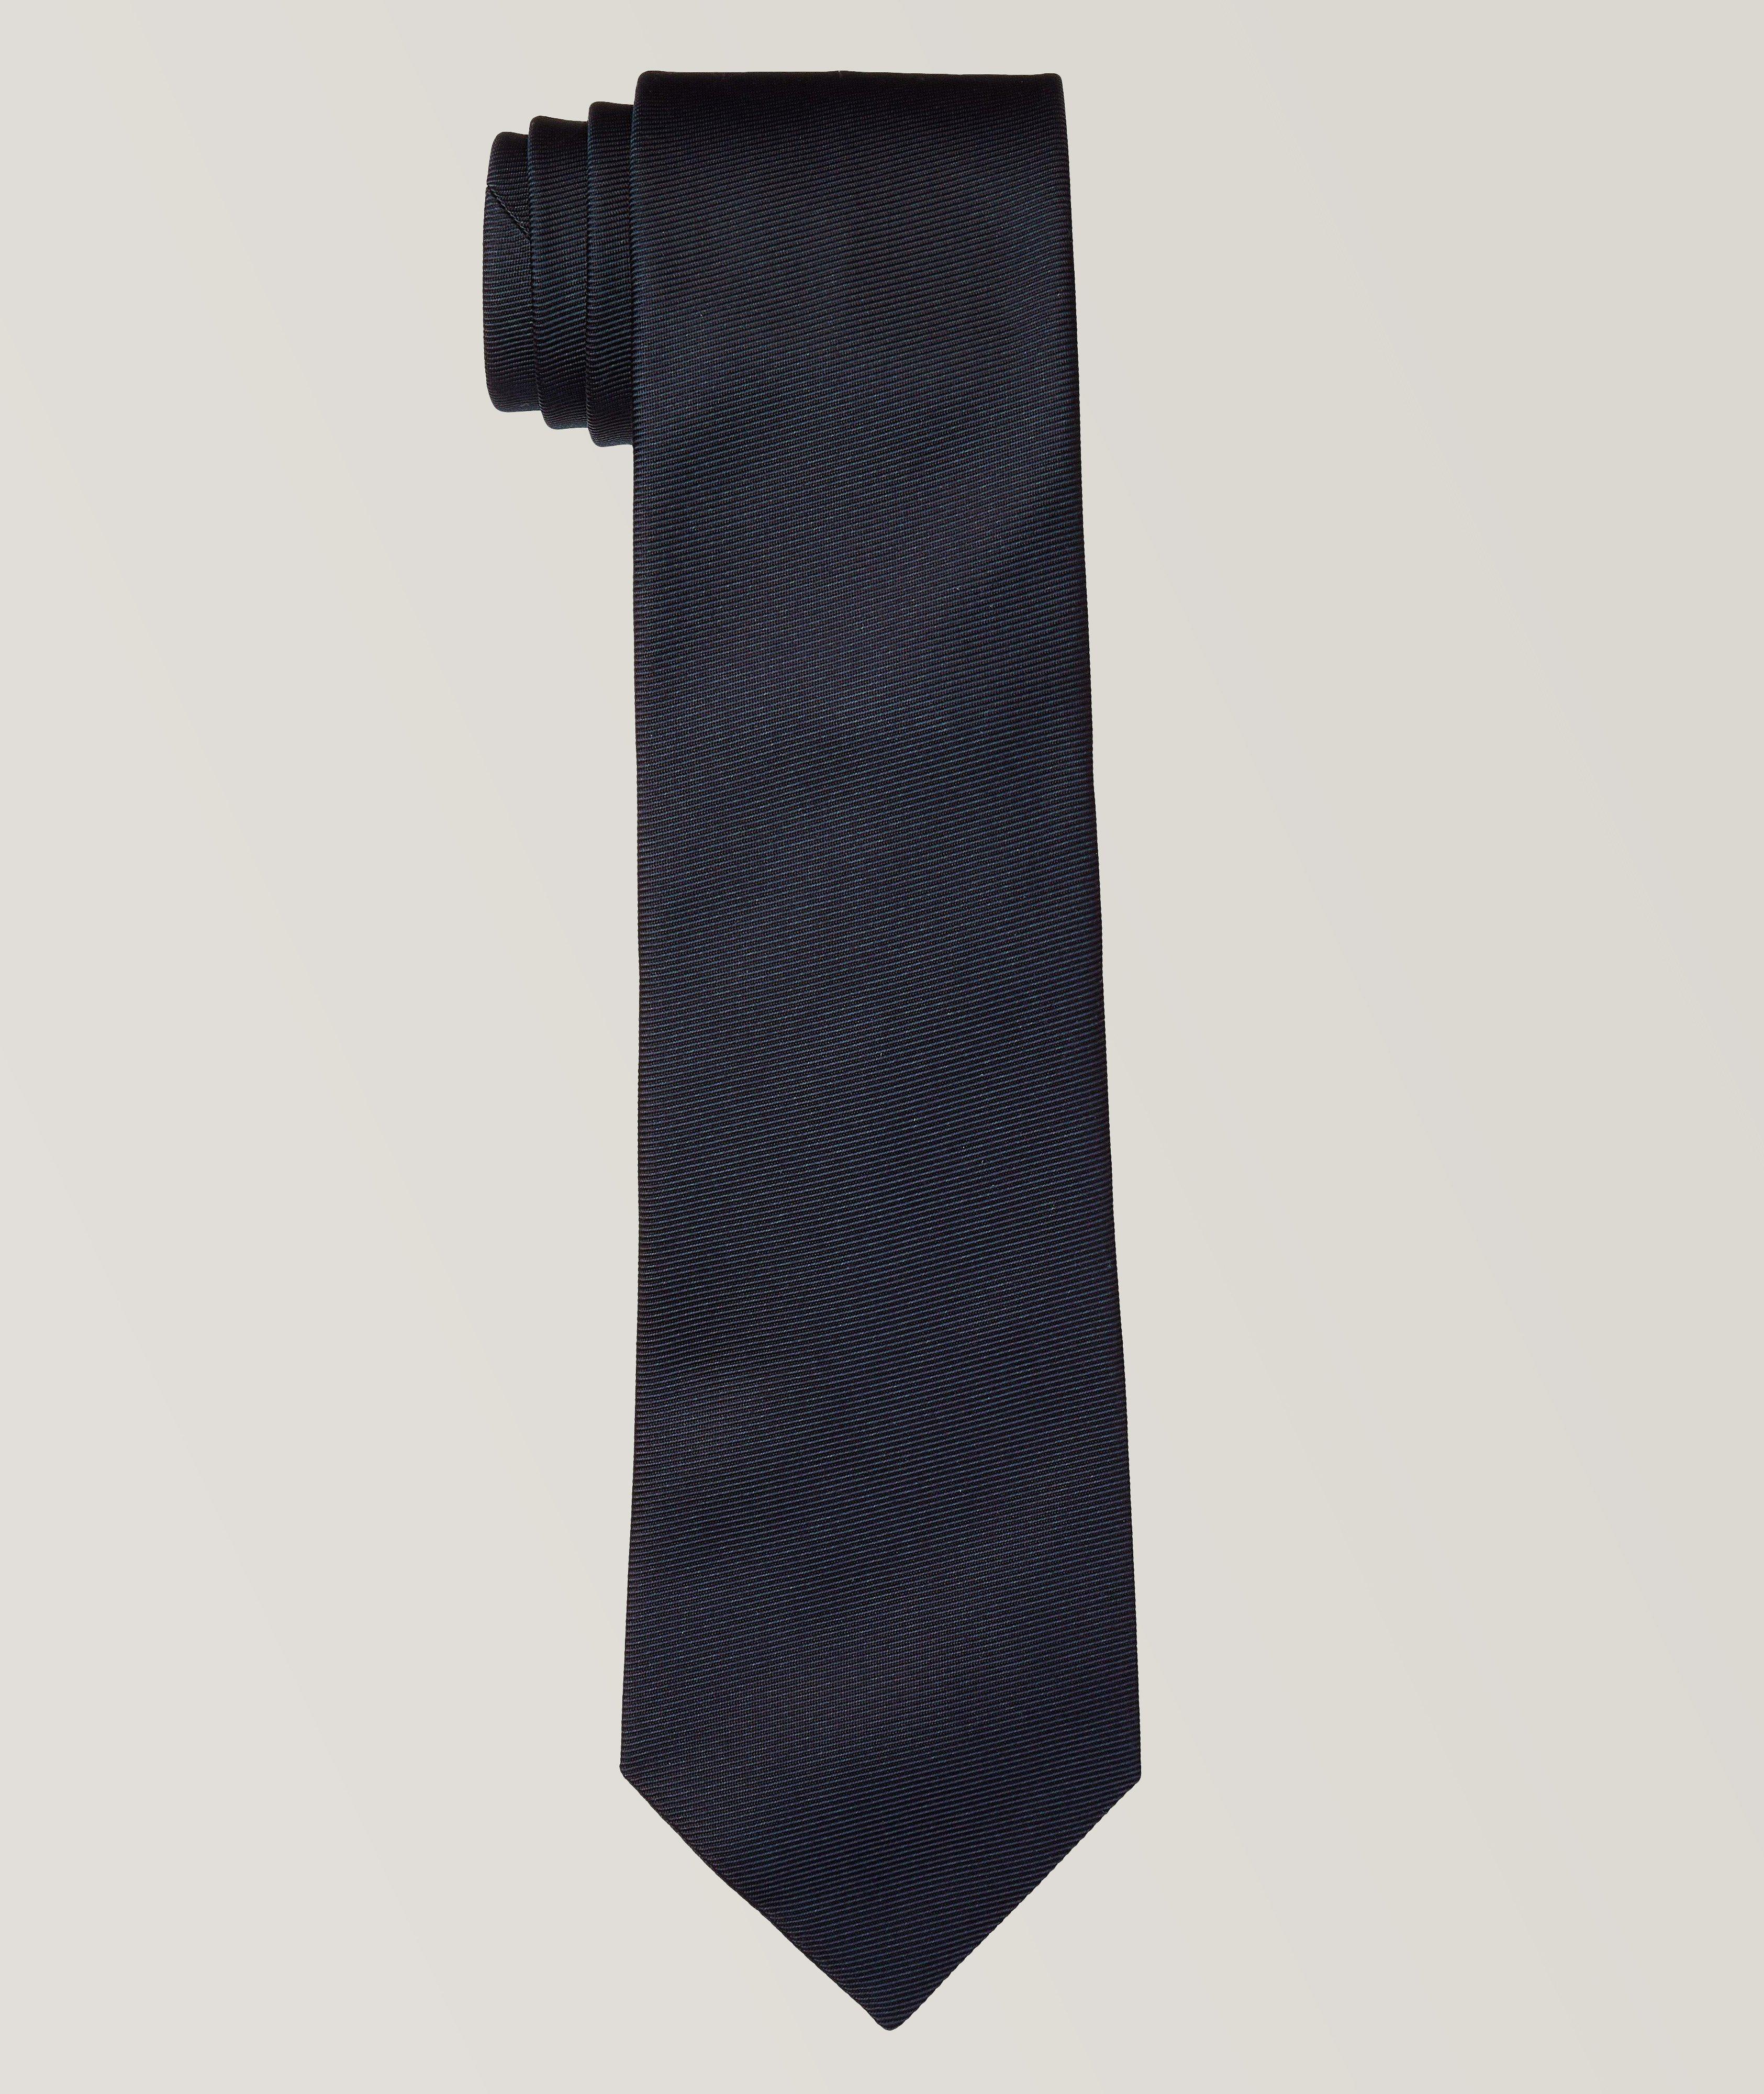 Cravate unie en soie texturée image 0